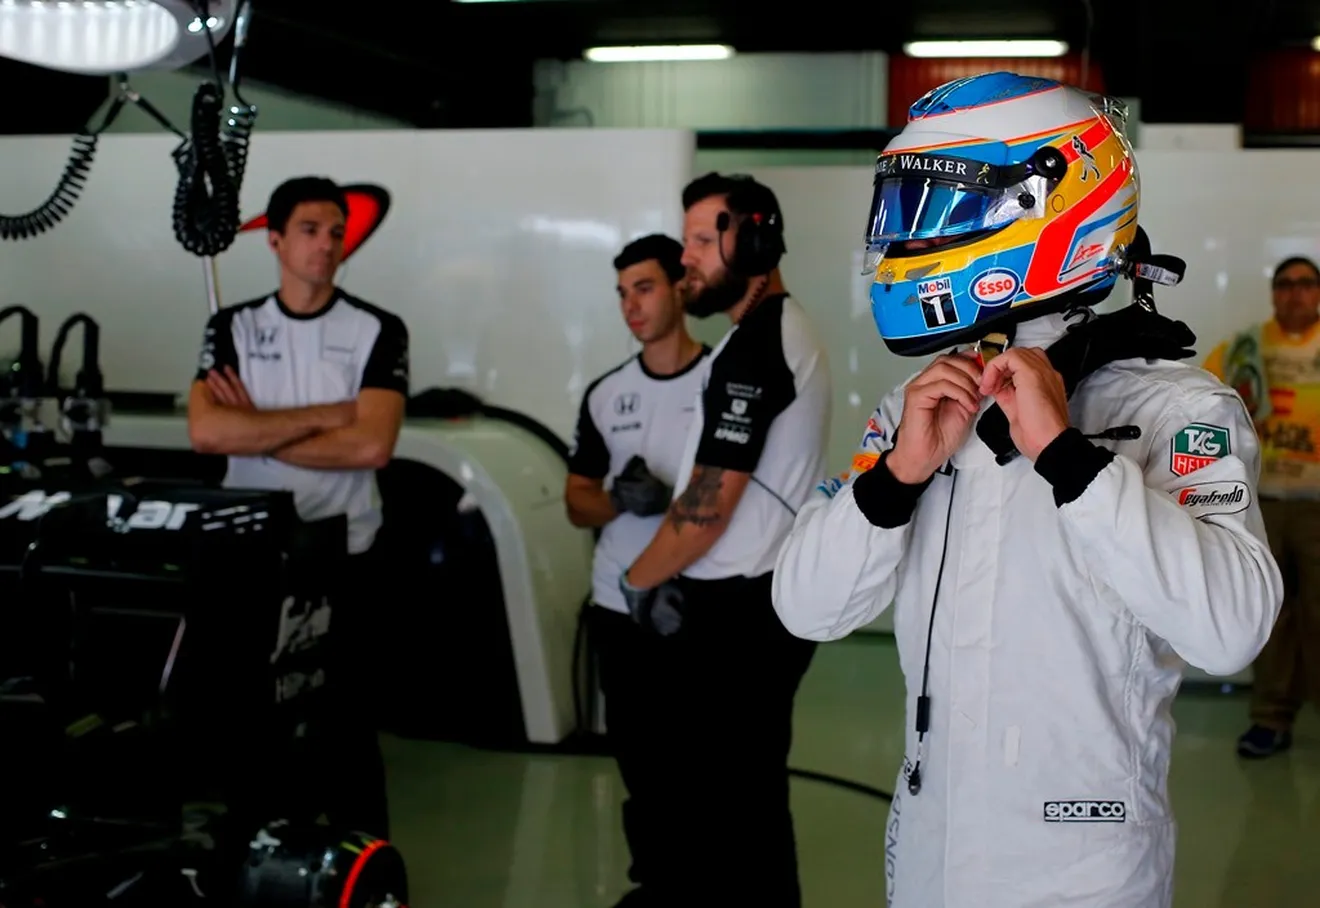 El colmo de la mala suerte para Alonso: abandonó por la visera de otro piloto